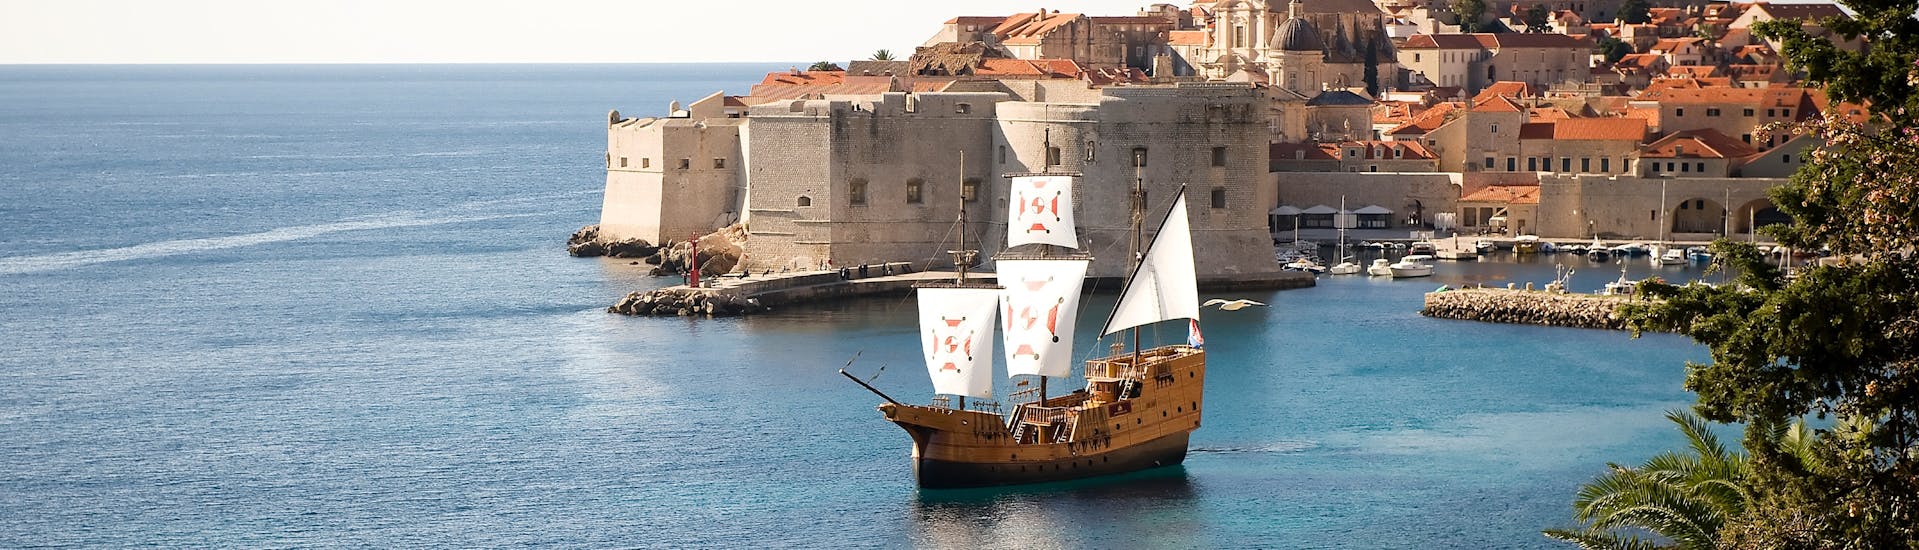 Immagine della tradizionale nave Karaka, utilizzata per il giro in barca al centro storico di Dubrovnik con giro a piedi da Karaka Dubrovnik.